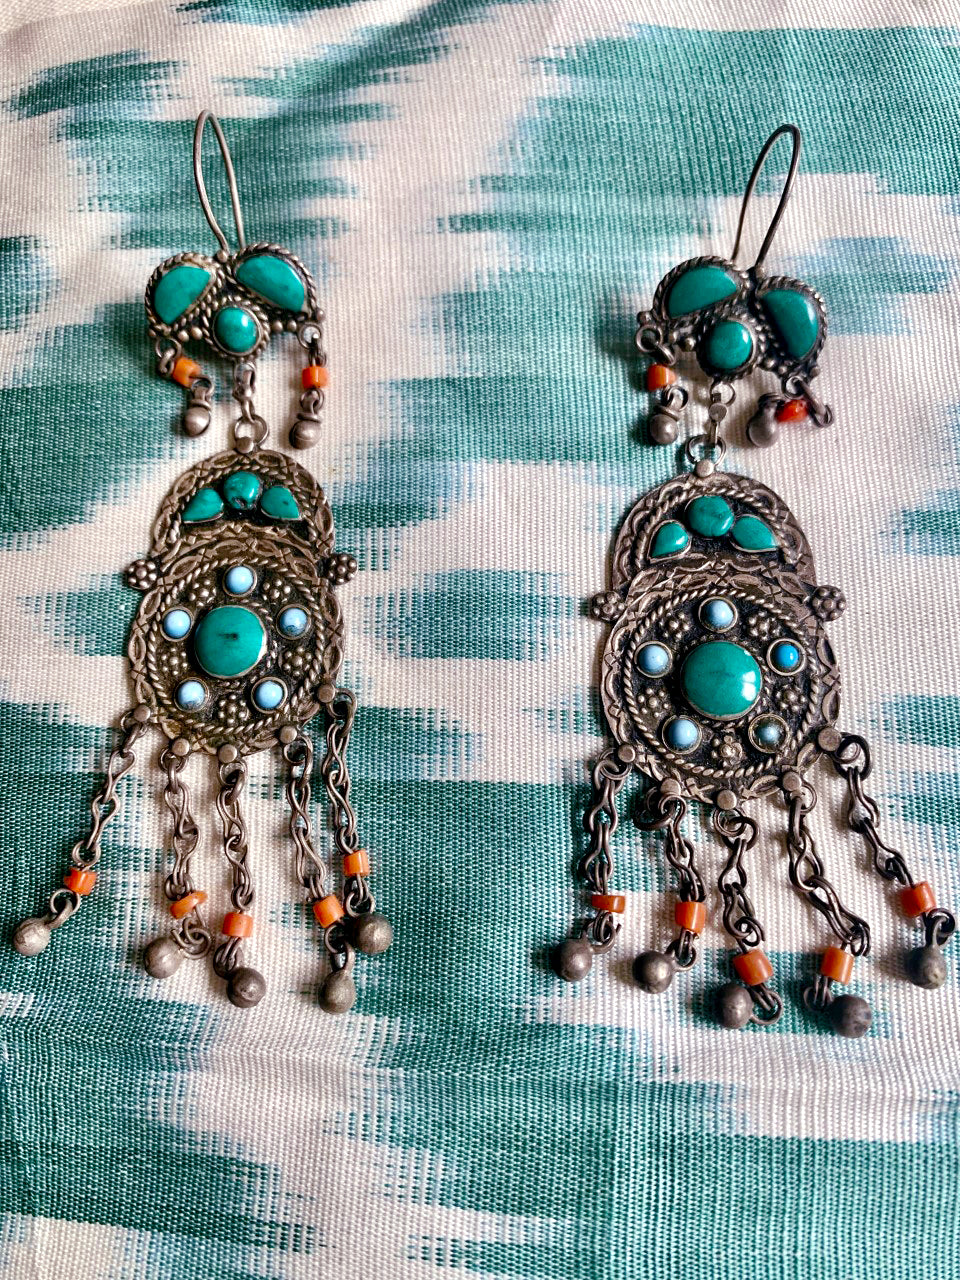 Bukhara earrings